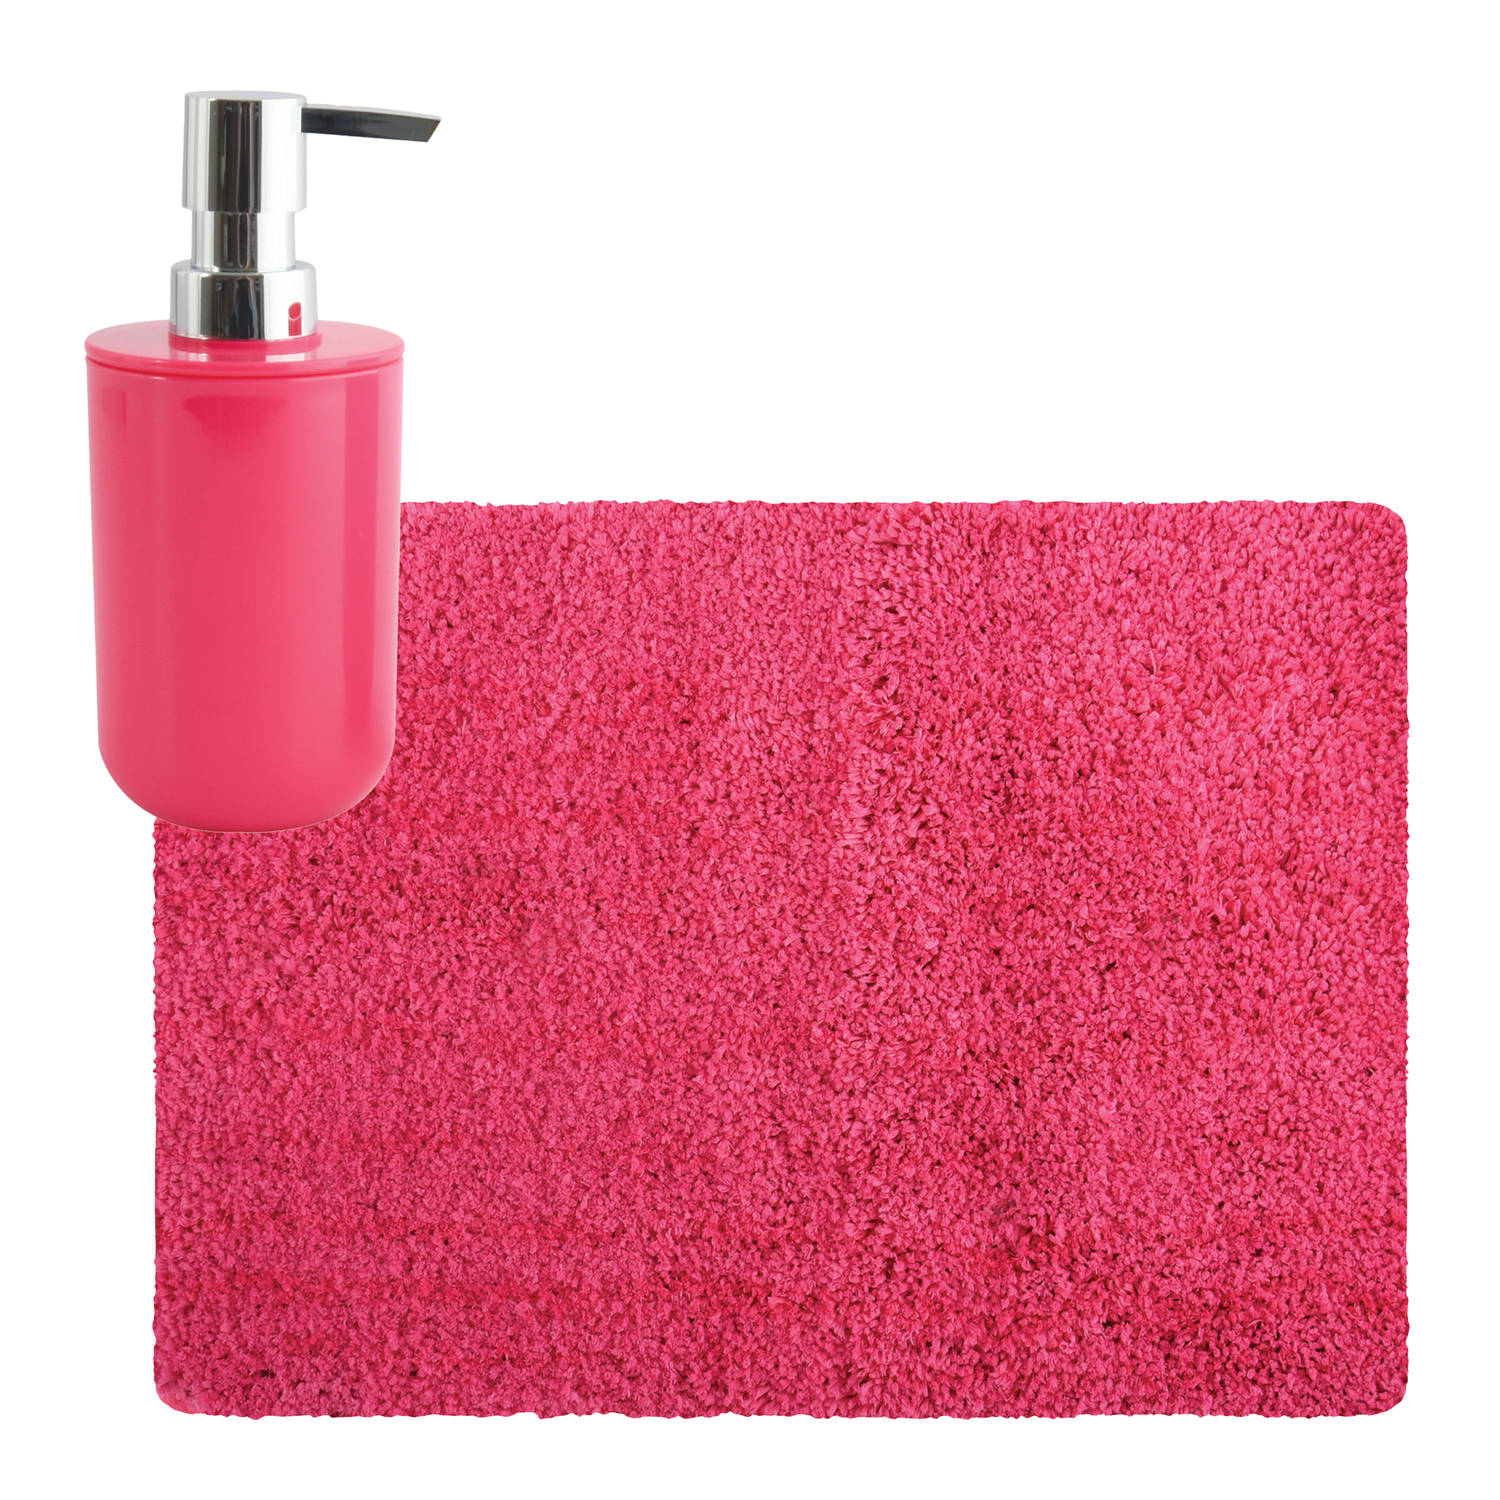 MSV badkamer droogloop tapijt Langharig 50 x 70 cm incl zeeppompje zelfde kleur fuchsia roze Badmatj